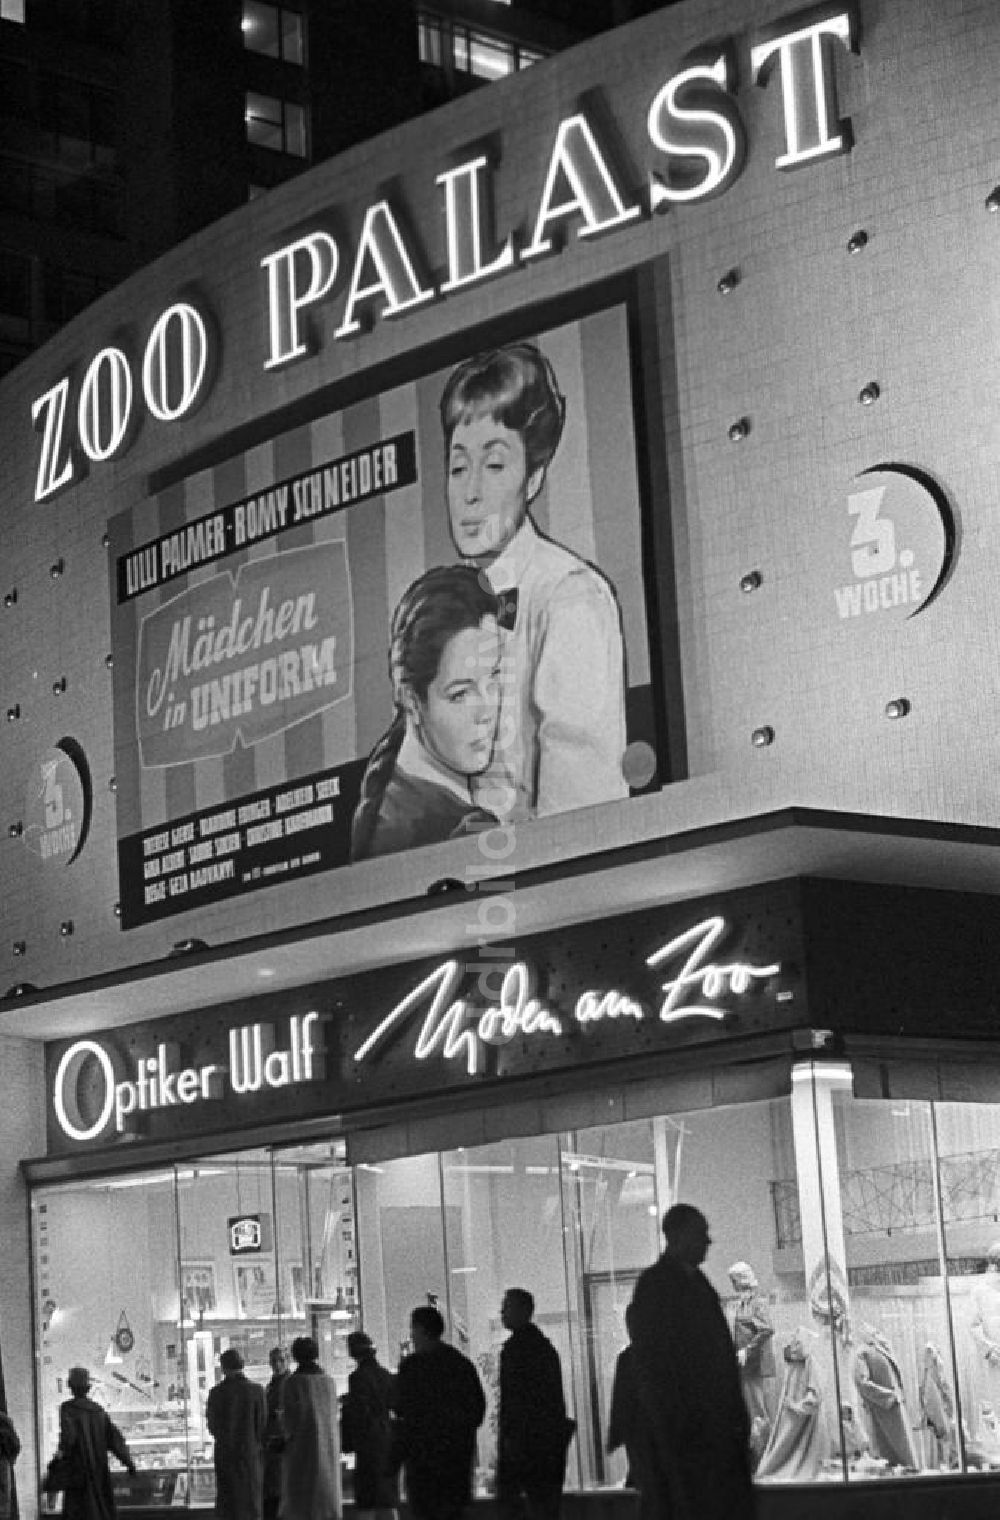 DDR-Fotoarchiv: Berlin - Westberlin - Zoo Palast spielt Mädchen in Uniform 1958